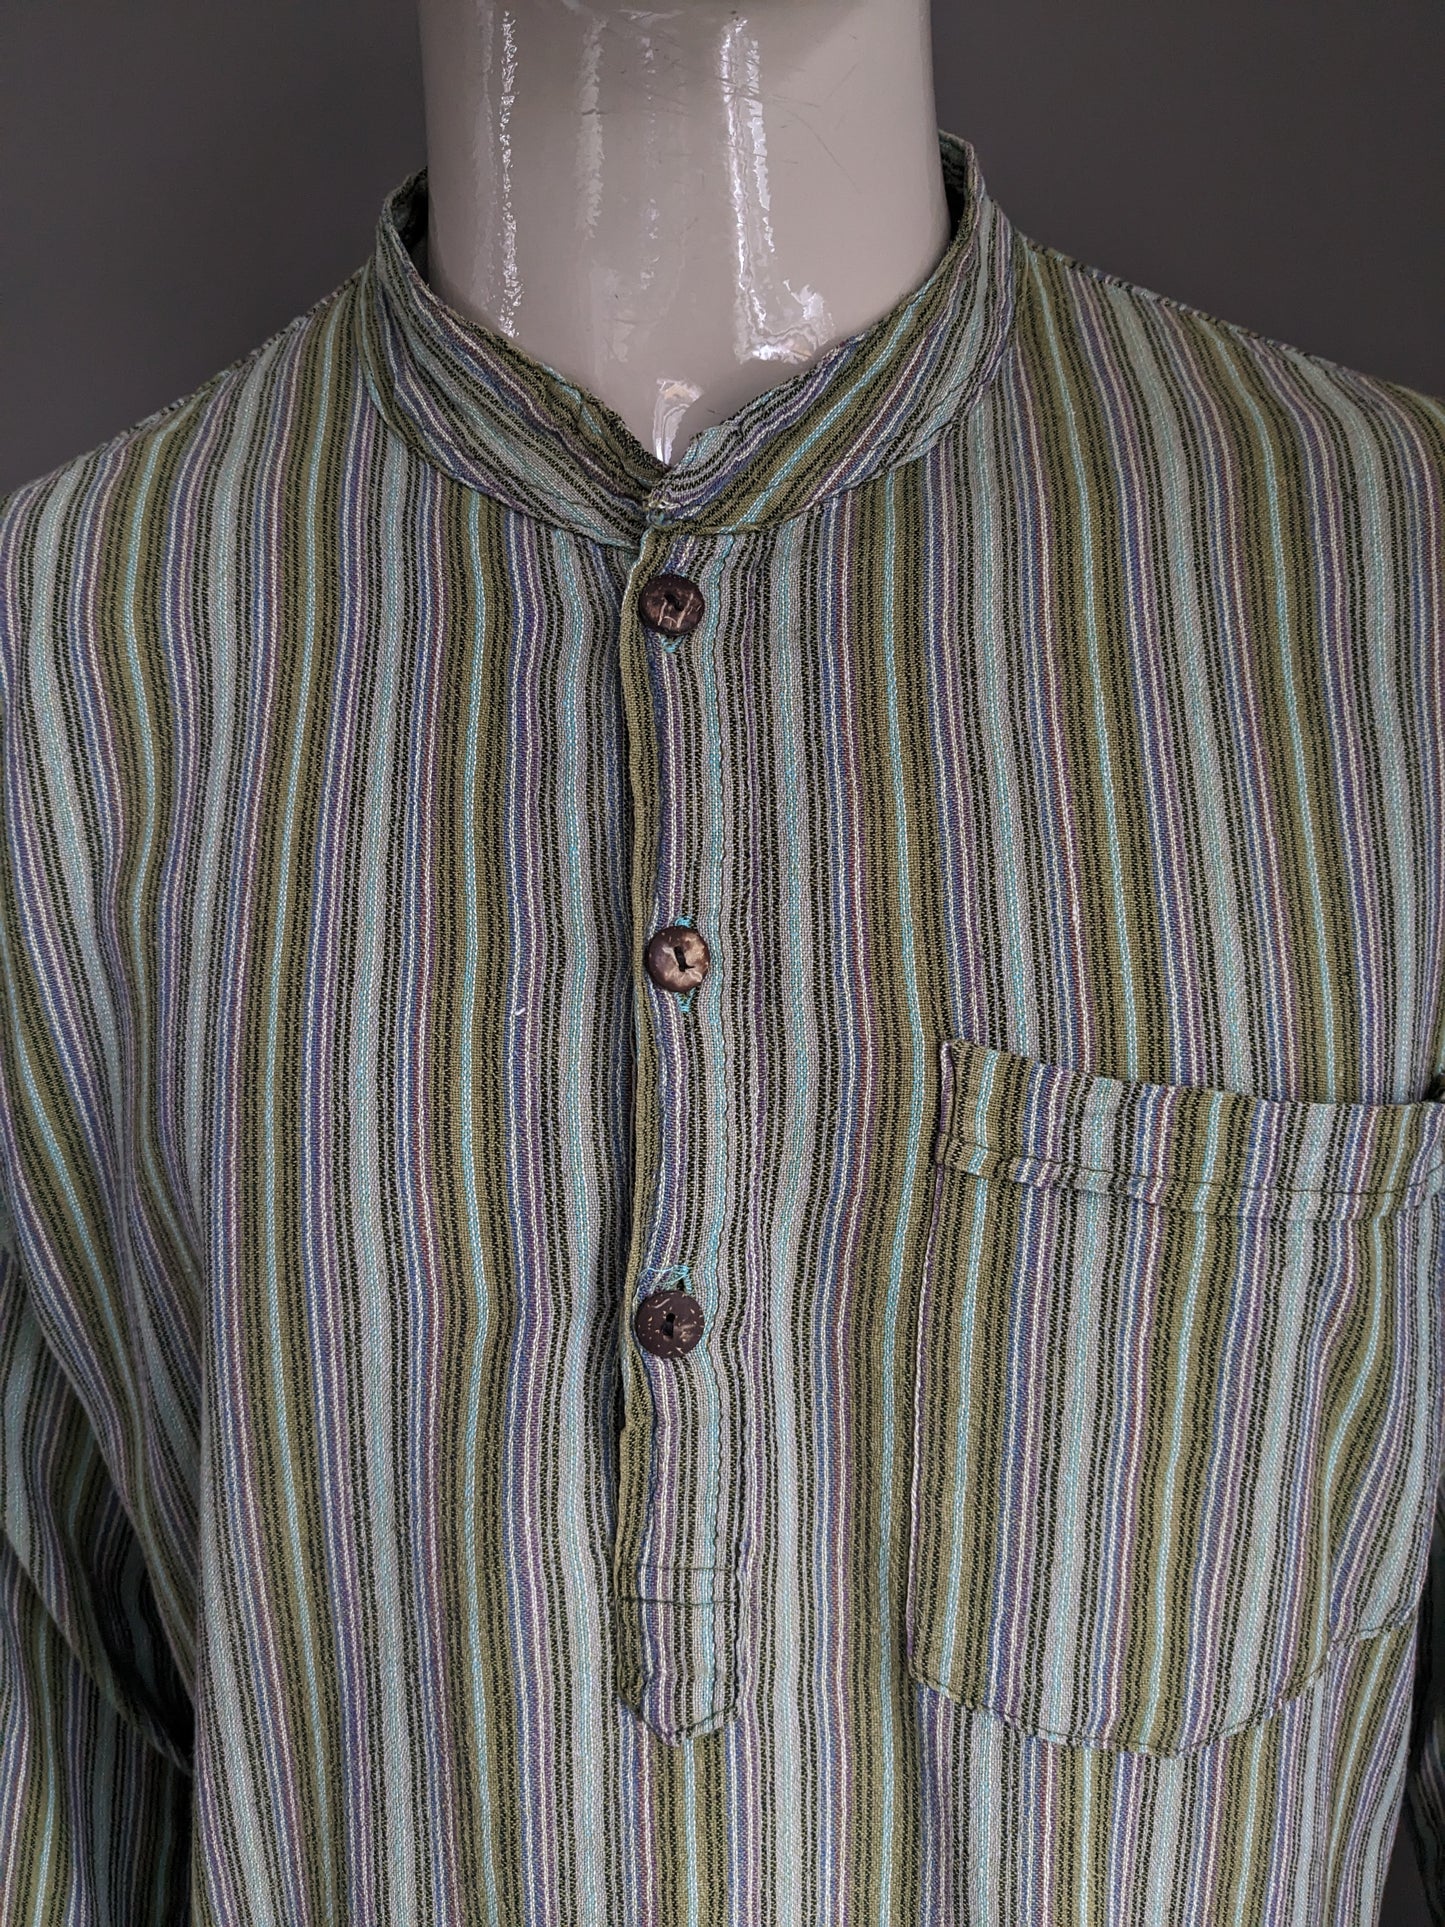 Suéter / camisa de polo vintage con cuello elevado / agricultores / mao. Verde morado marrón azul rayado con bolsa. Tamaño xl.